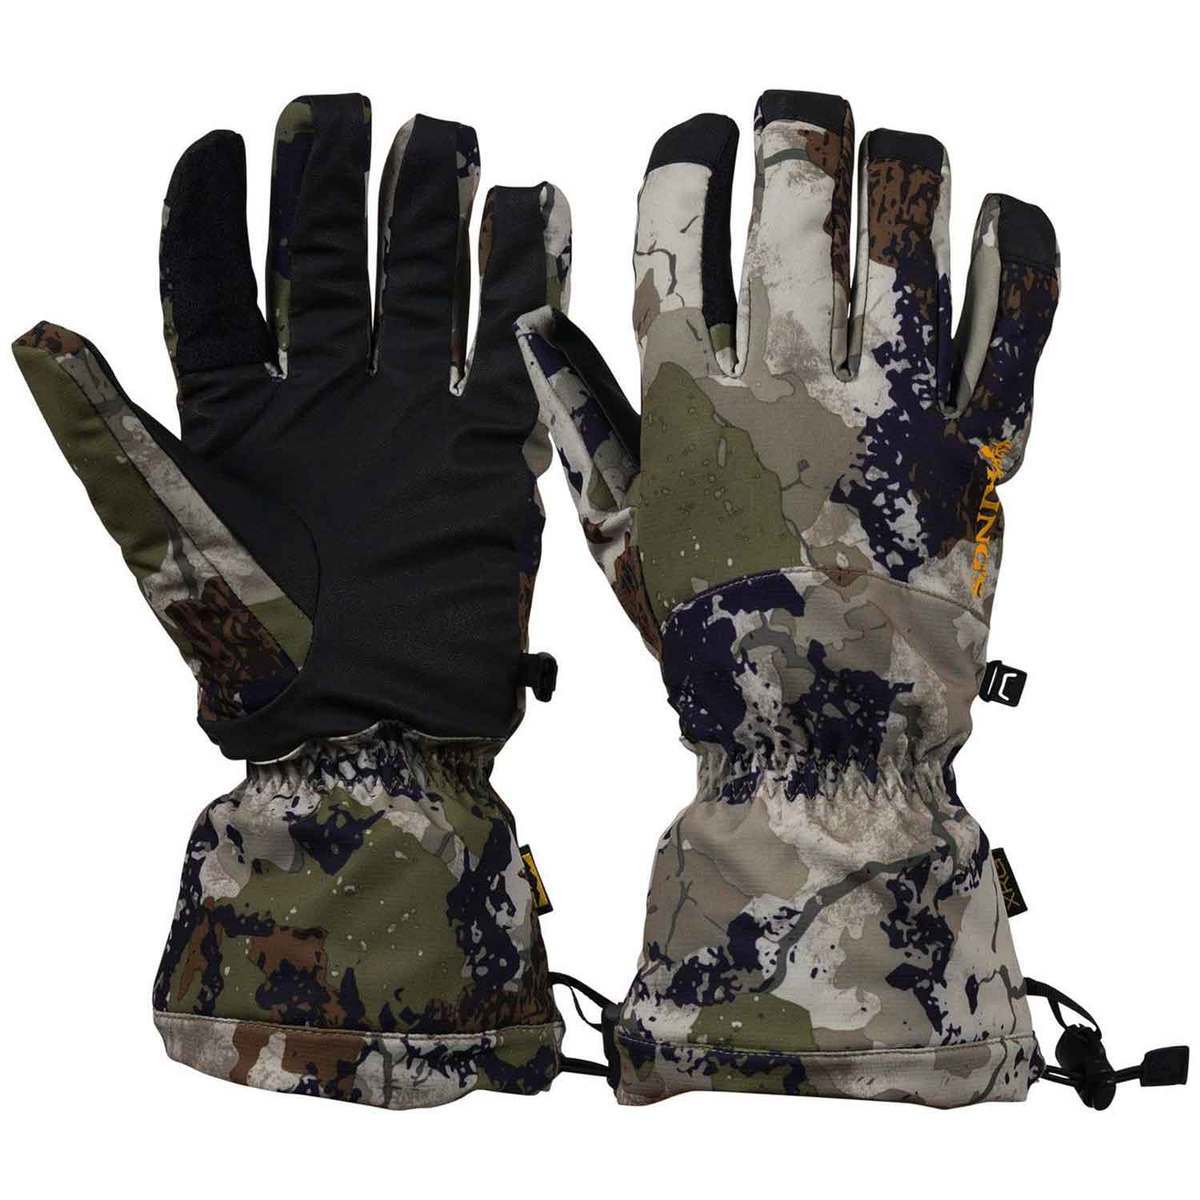 https://www.sportsmans.com/medias/kings-camo-mens-xkg-insulated-hunting-gloves-xk7-m-1686384-1.jpg?context=bWFzdGVyfGltYWdlc3wxMDk5MzR8aW1hZ2UvanBlZ3xhVzFoWjJWekwyaGlOUzlvTmpZdk9UazFPRFEwTmpneU5UVXdNaTVxY0djfDBmZWJjMzMwMjI3MjQwZGVlZmIyNGNmMjU2MmI1NDY5ODc3NmMwYmNkNzJiMDVjY2Q5OTAwZDc4ODQ2MzZkOGI